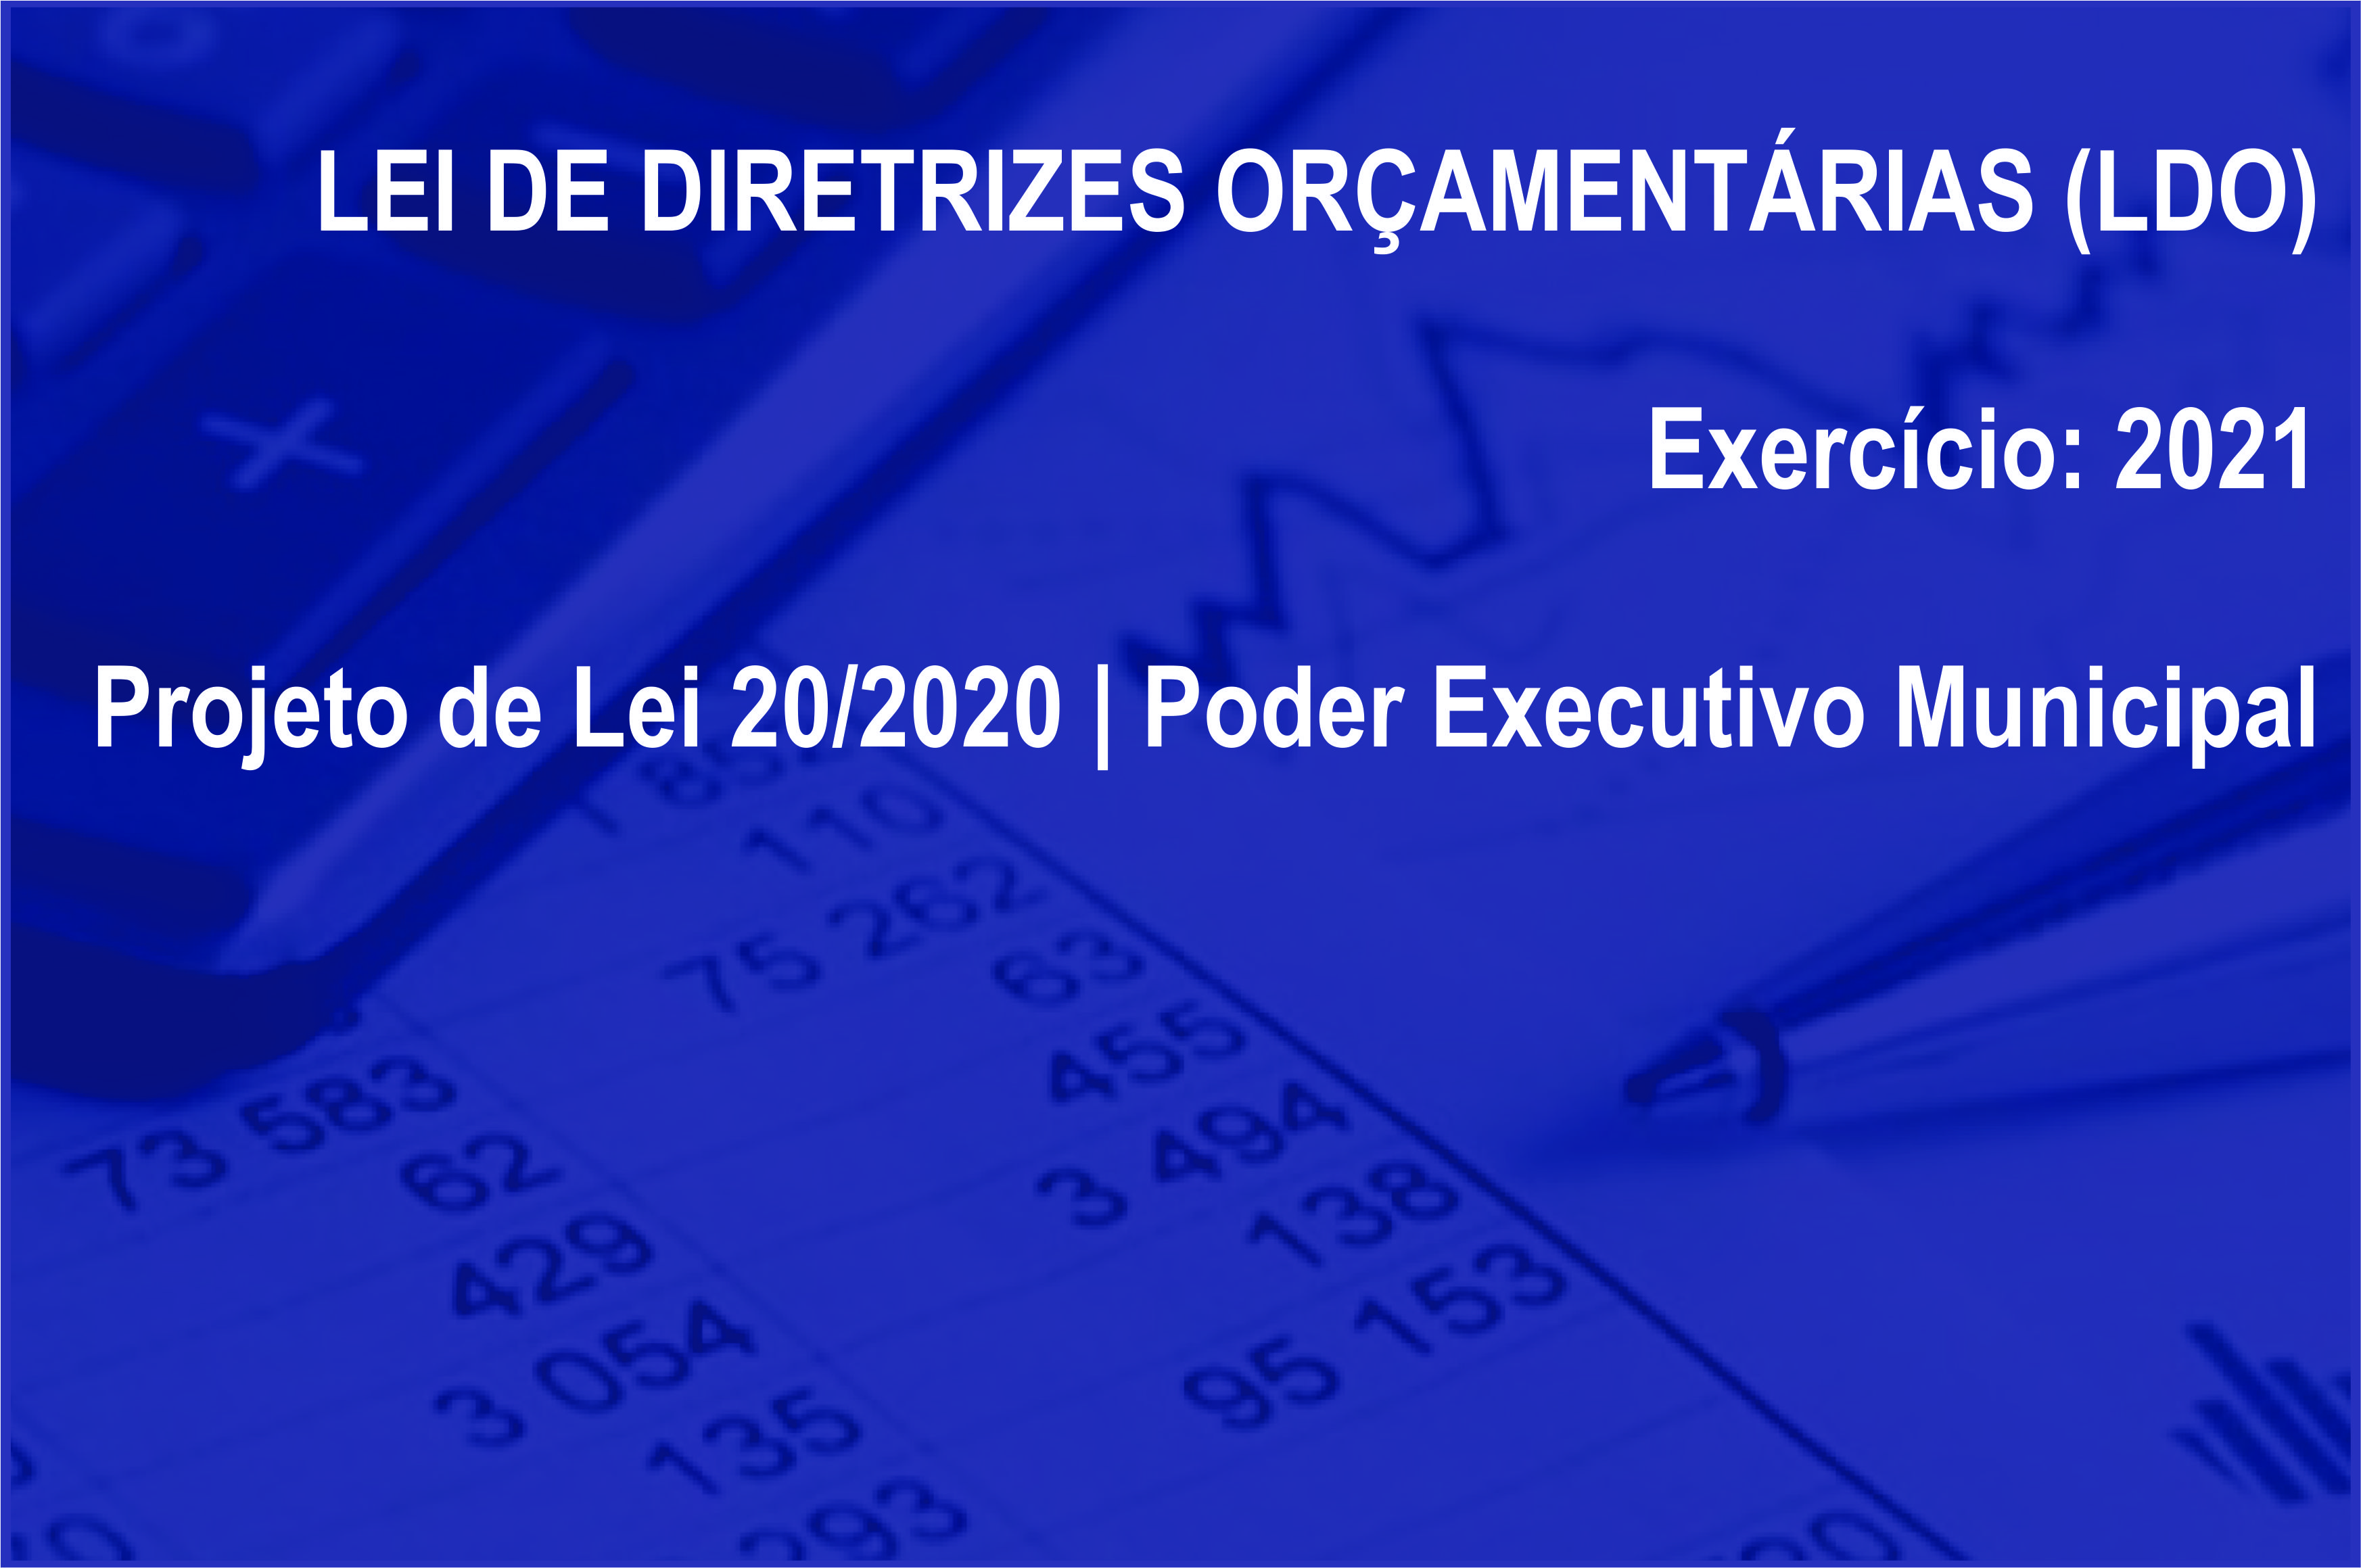 Lei de Diretrizes Orçamentárias (LDO) - Exercício 2021